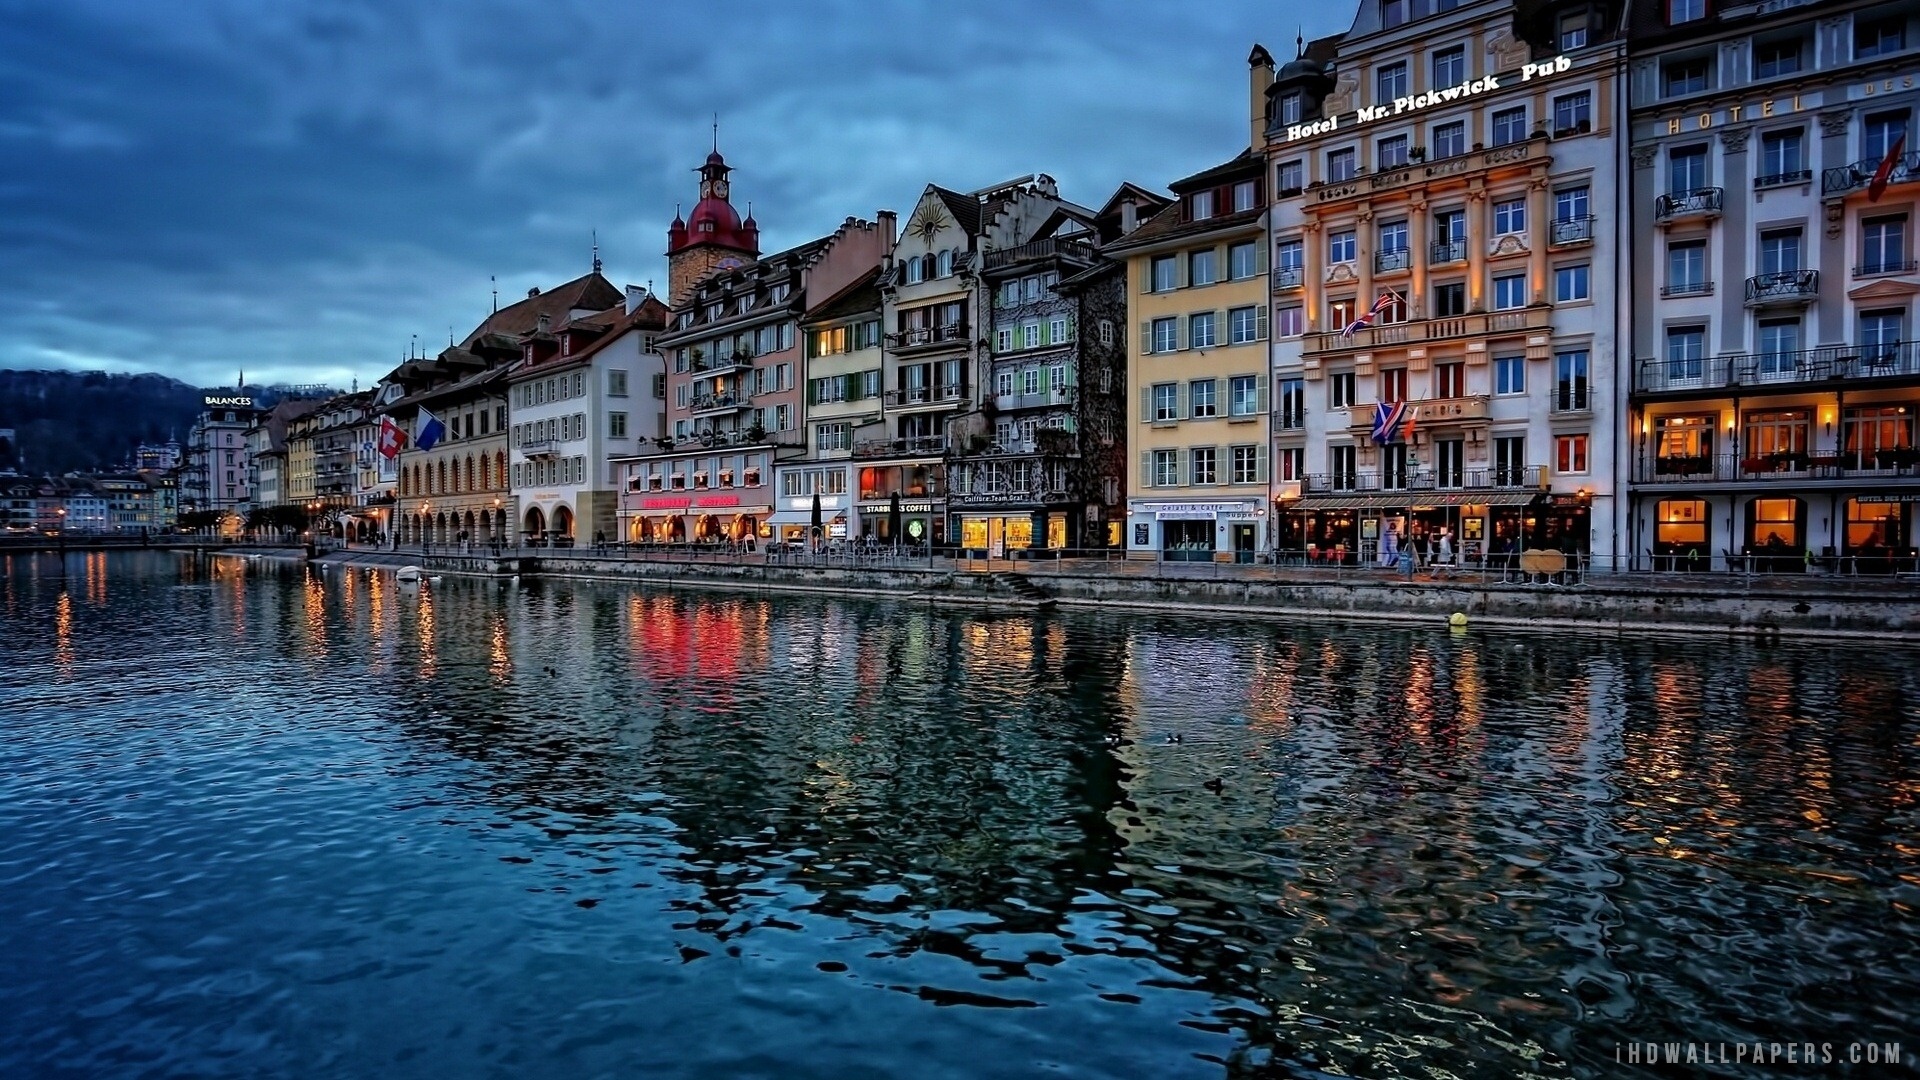 River Reuss Lucerne Switzerland HD Wallpaper IHD